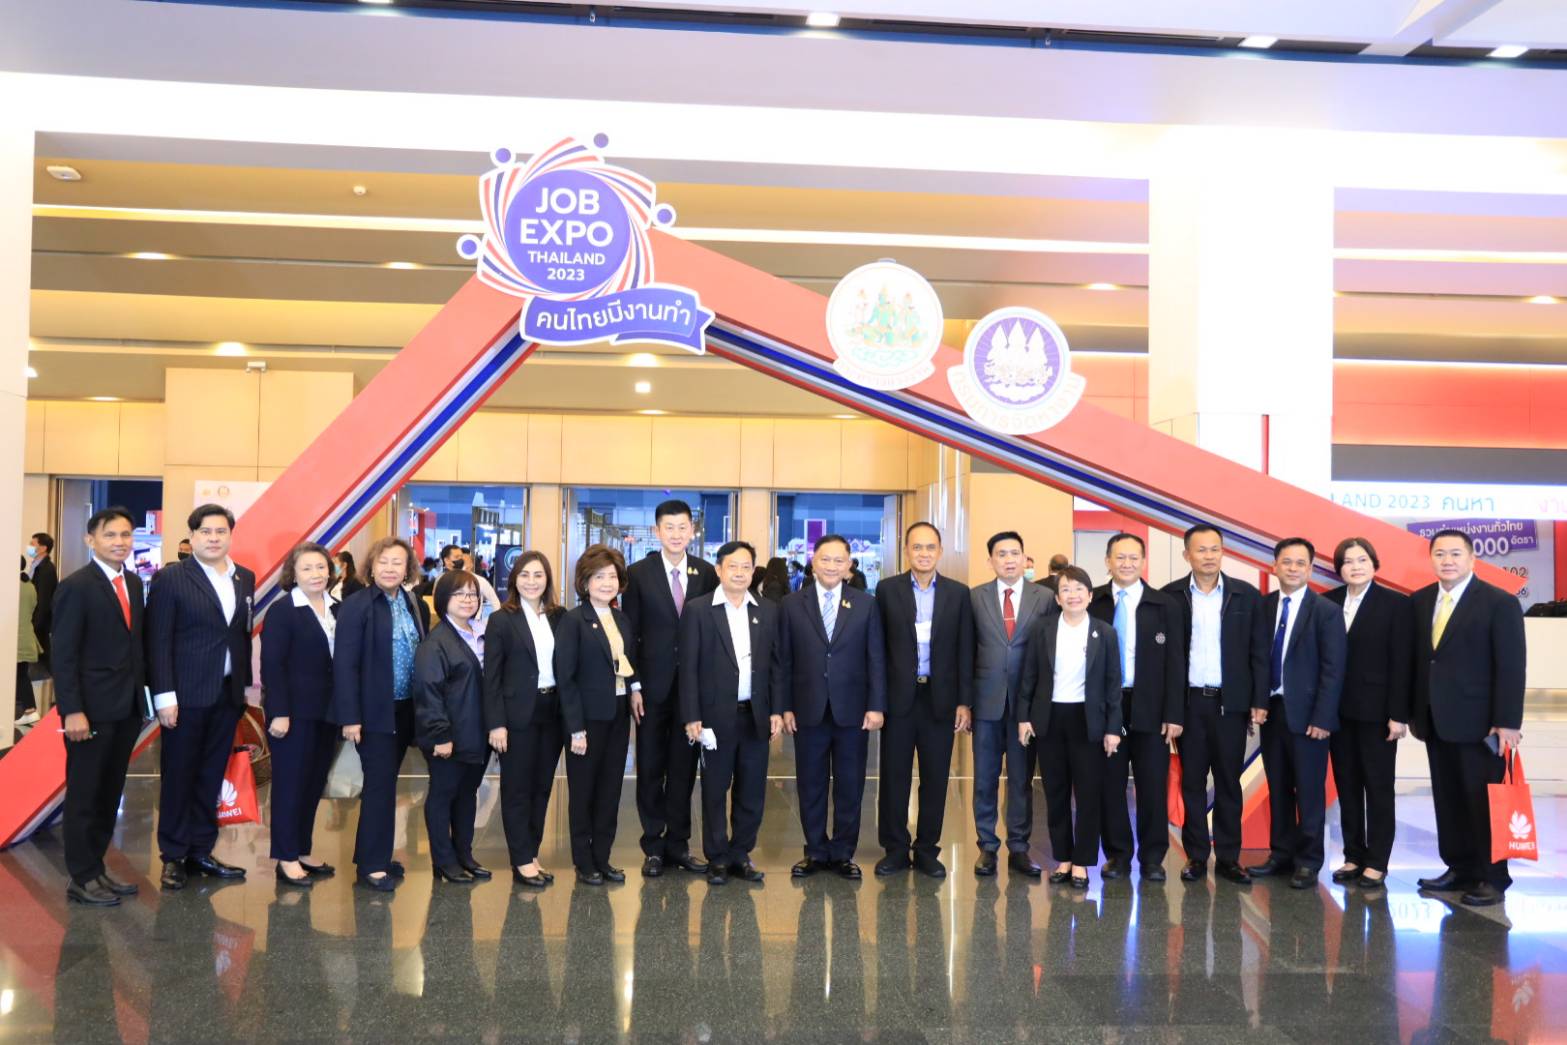 คณะกรรมาธิการการแรงงาน วุฒิสภา ลงพื้นที่ศึกษาดูงาน “Job Expo Thailand 2023” ณ ศูนย์นิทรรศการและการประชุมไบเทค บางนา Hall EH 100 – 102 กรุงเทพมหานคร